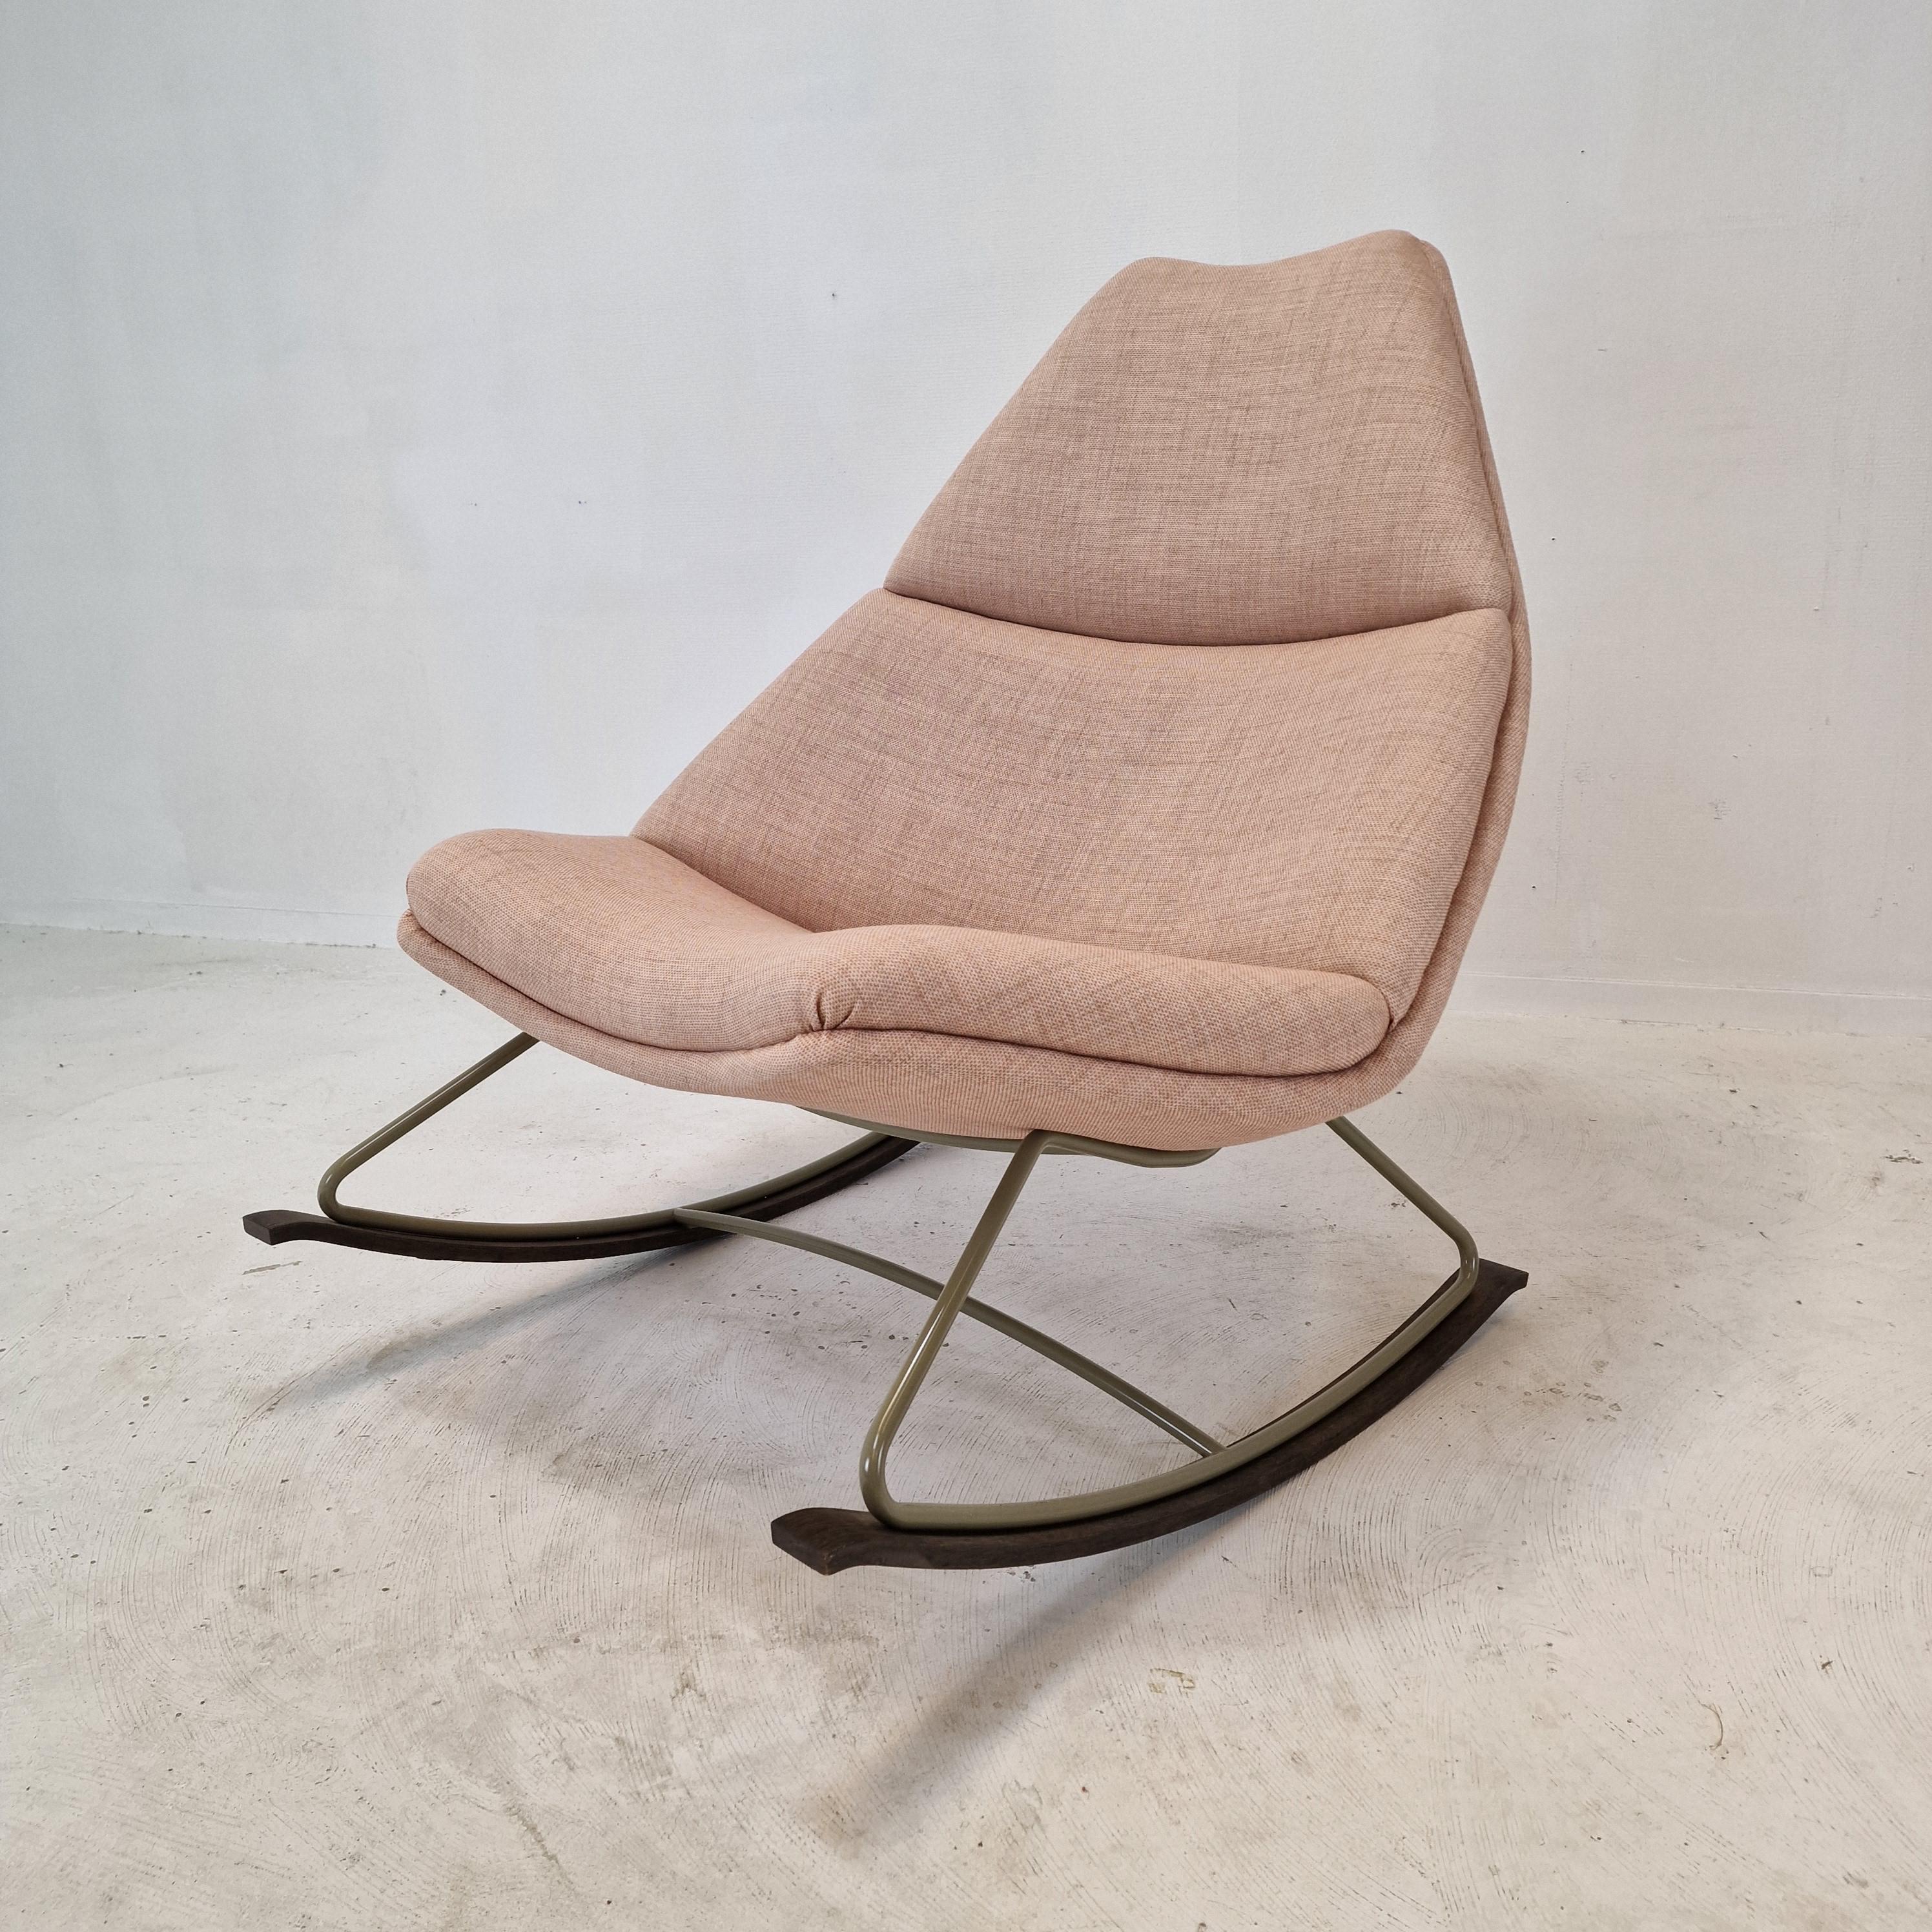 Sehr bequemer Schaukelstuhl, hergestellt von Artifort und entworfen von Geoffrey Harcourt in den 60er Jahren. 

Dieser Stuhl wird im Jahr 2022 hergestellt.

Der Stoff und der Schaumstoff sind in perfektem Zustand.
Er ist mit hochwertigem